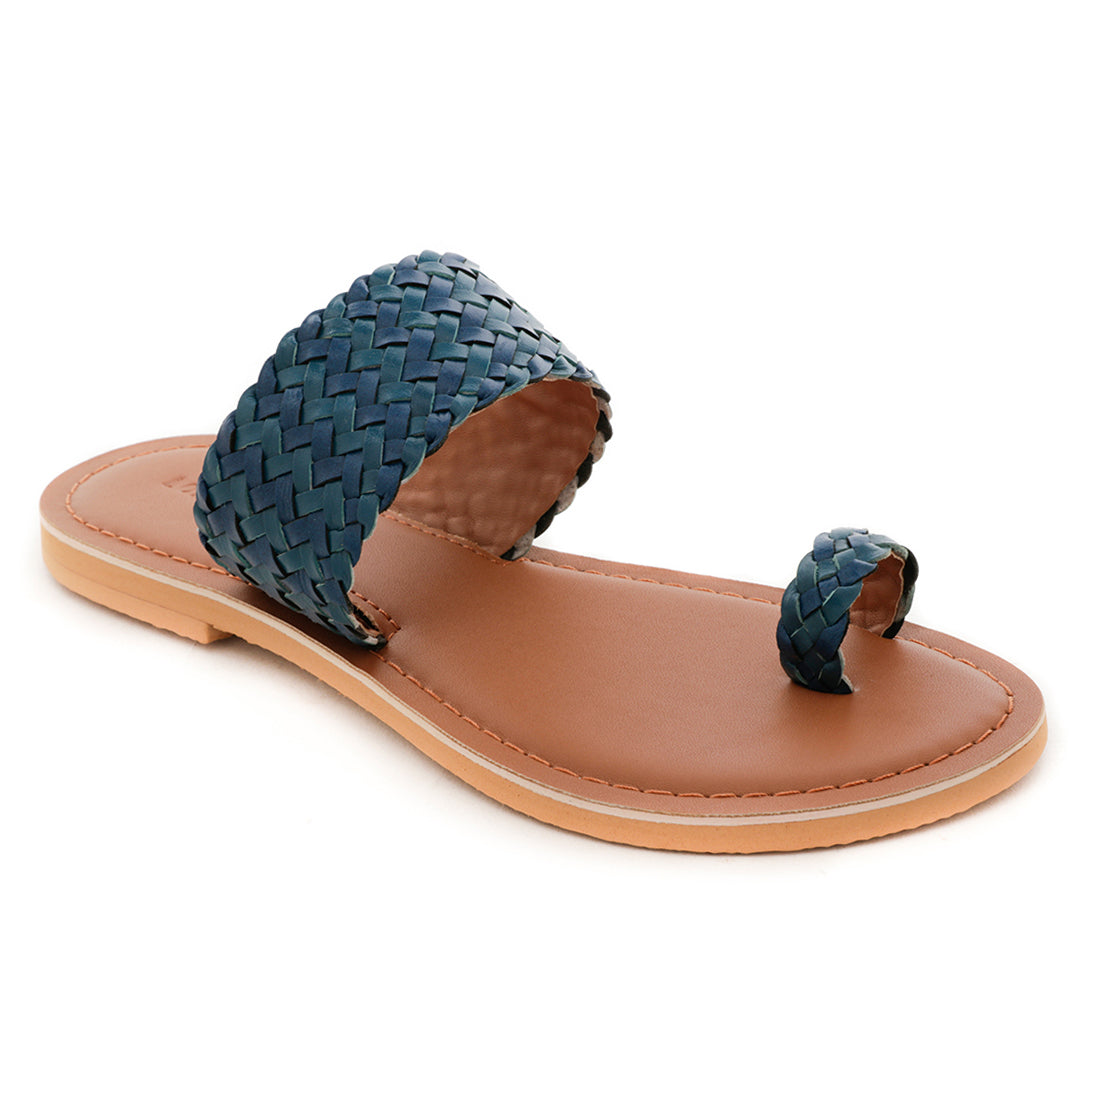 Blue Weaved One Toe Sandal - Navy